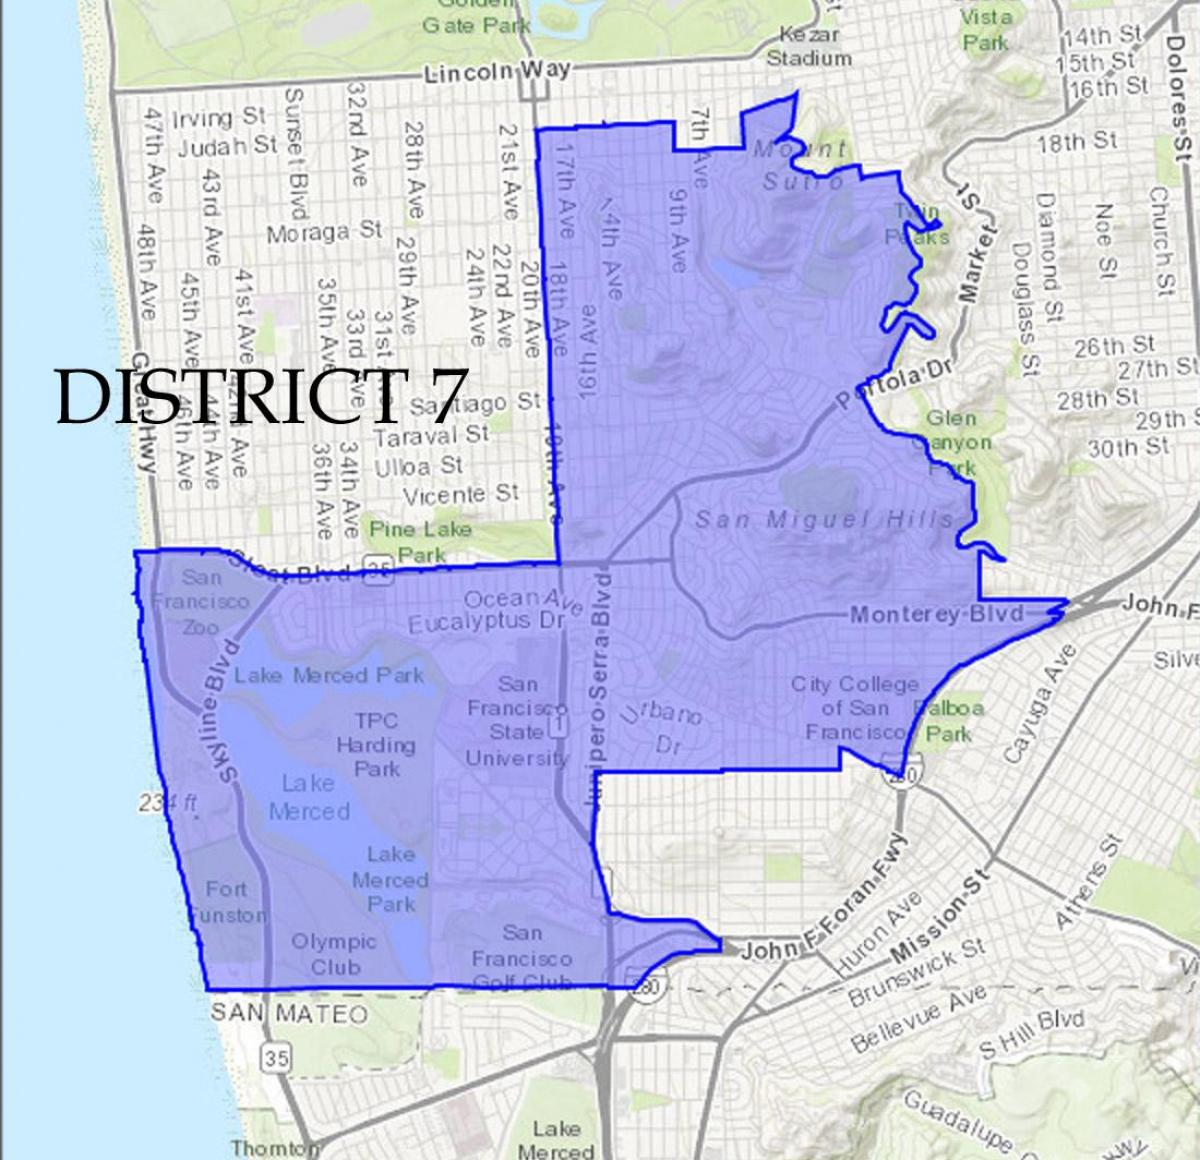 Mapa de San Francisco distrito 7 